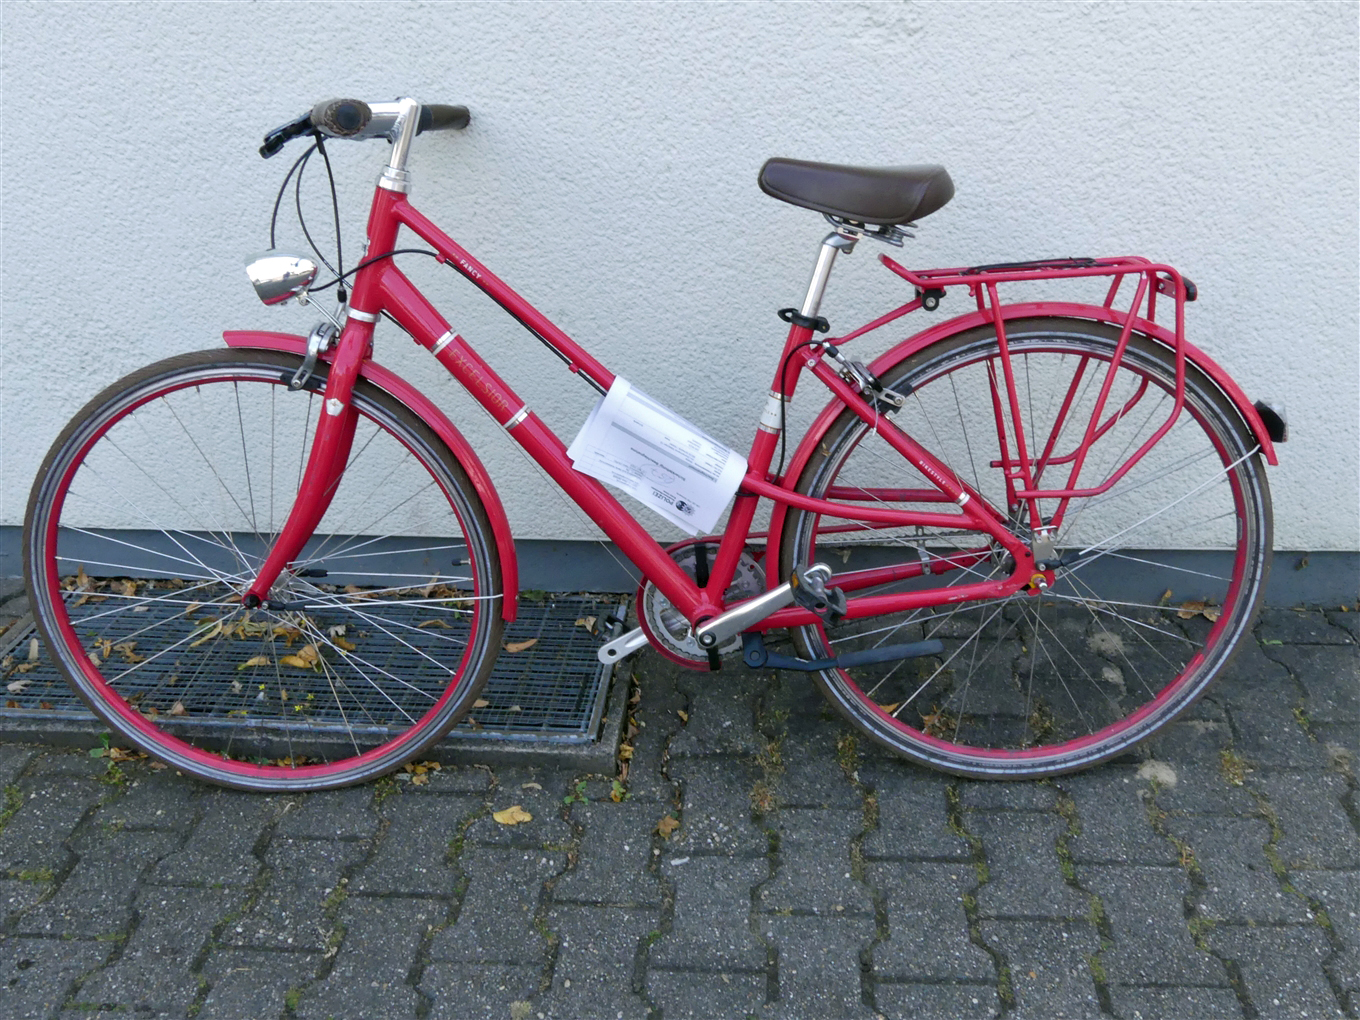 Polizei fragt: Wem gehört dieses gestohlene Damenrad?